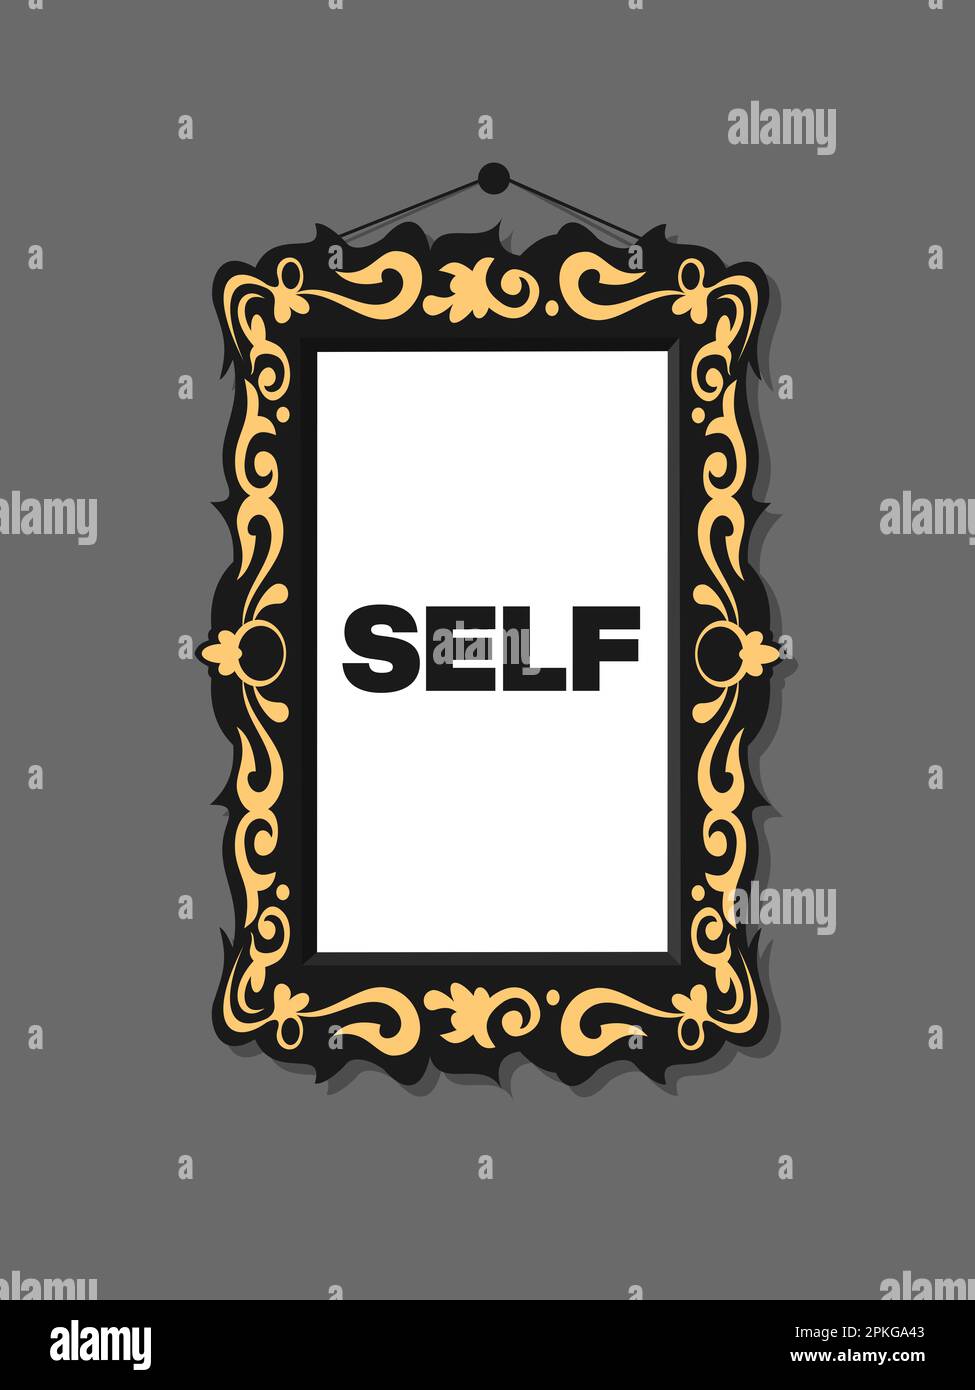 Selbstbild – Ich sehe mich im Bilderrahmen oder Spiegel. Psychologische und  psychische Wahrnehmung des eigenen Menschen. Vektordarstellung  Stockfotografie - Alamy